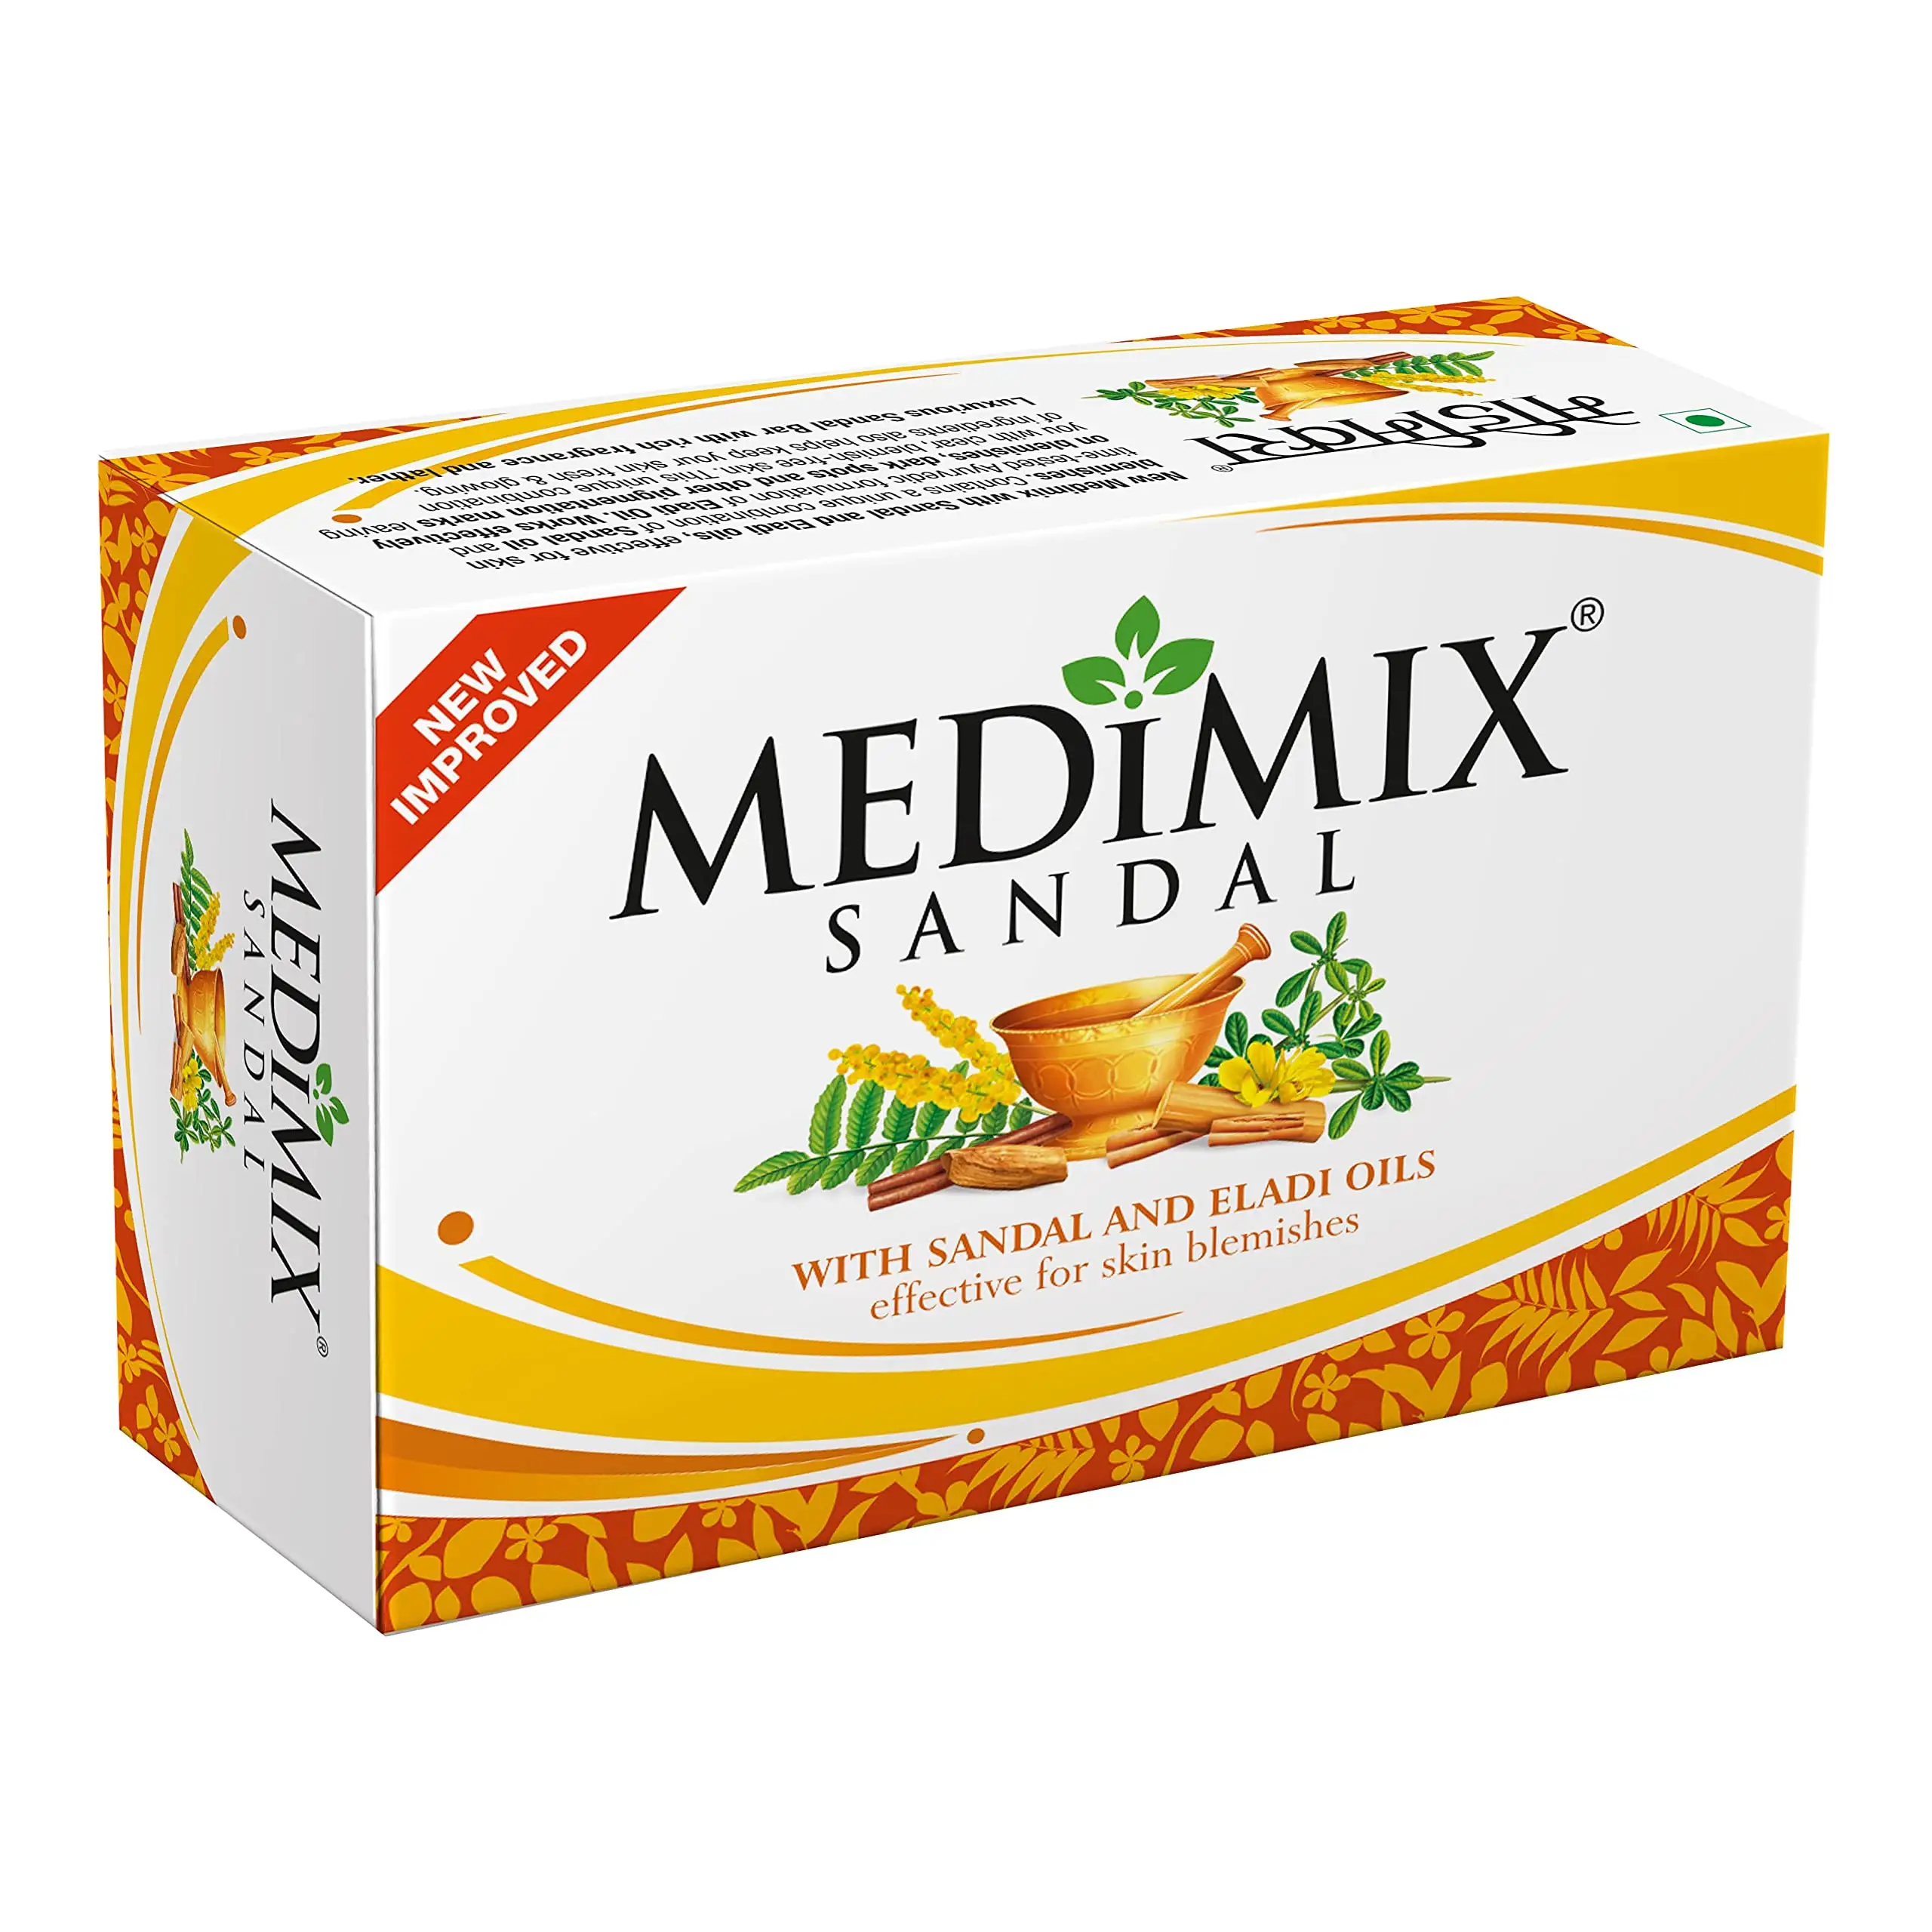 Medimix-Seife, 125g/4,40 oz, echtes Ayurveda, mit Sandalen-und Eladi-Ölen